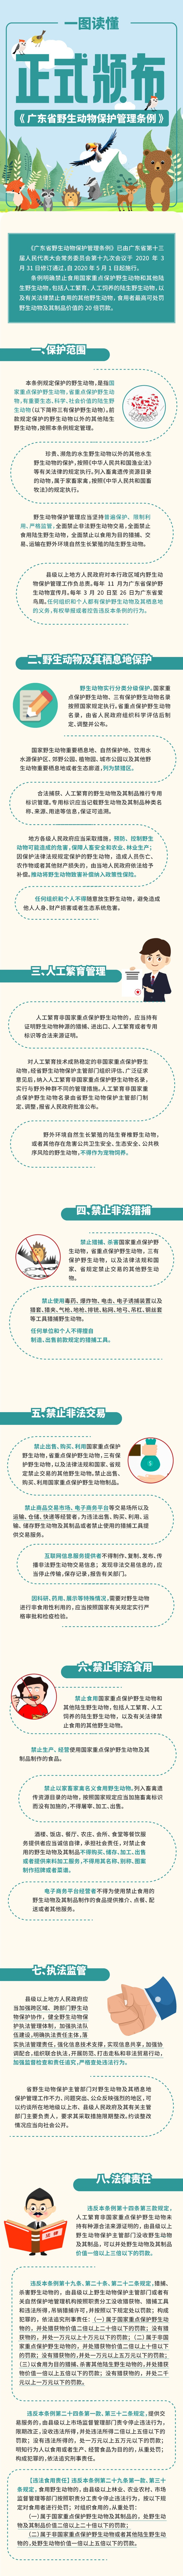 关于《广东省野生动物保护管理条例》的解读.jpg